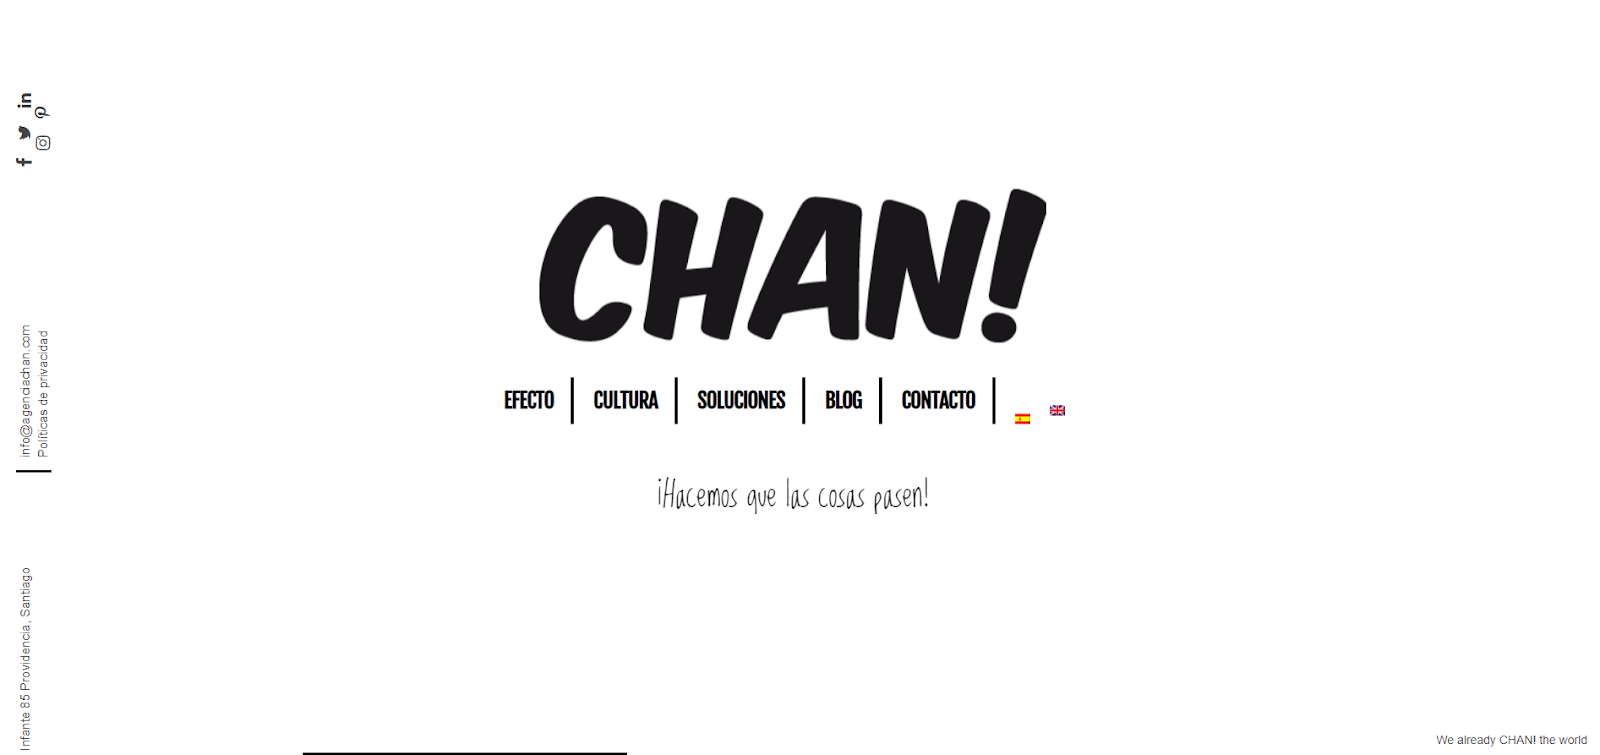 Agencia CHAN! - agencias de Publicidad en Santiago de Chile